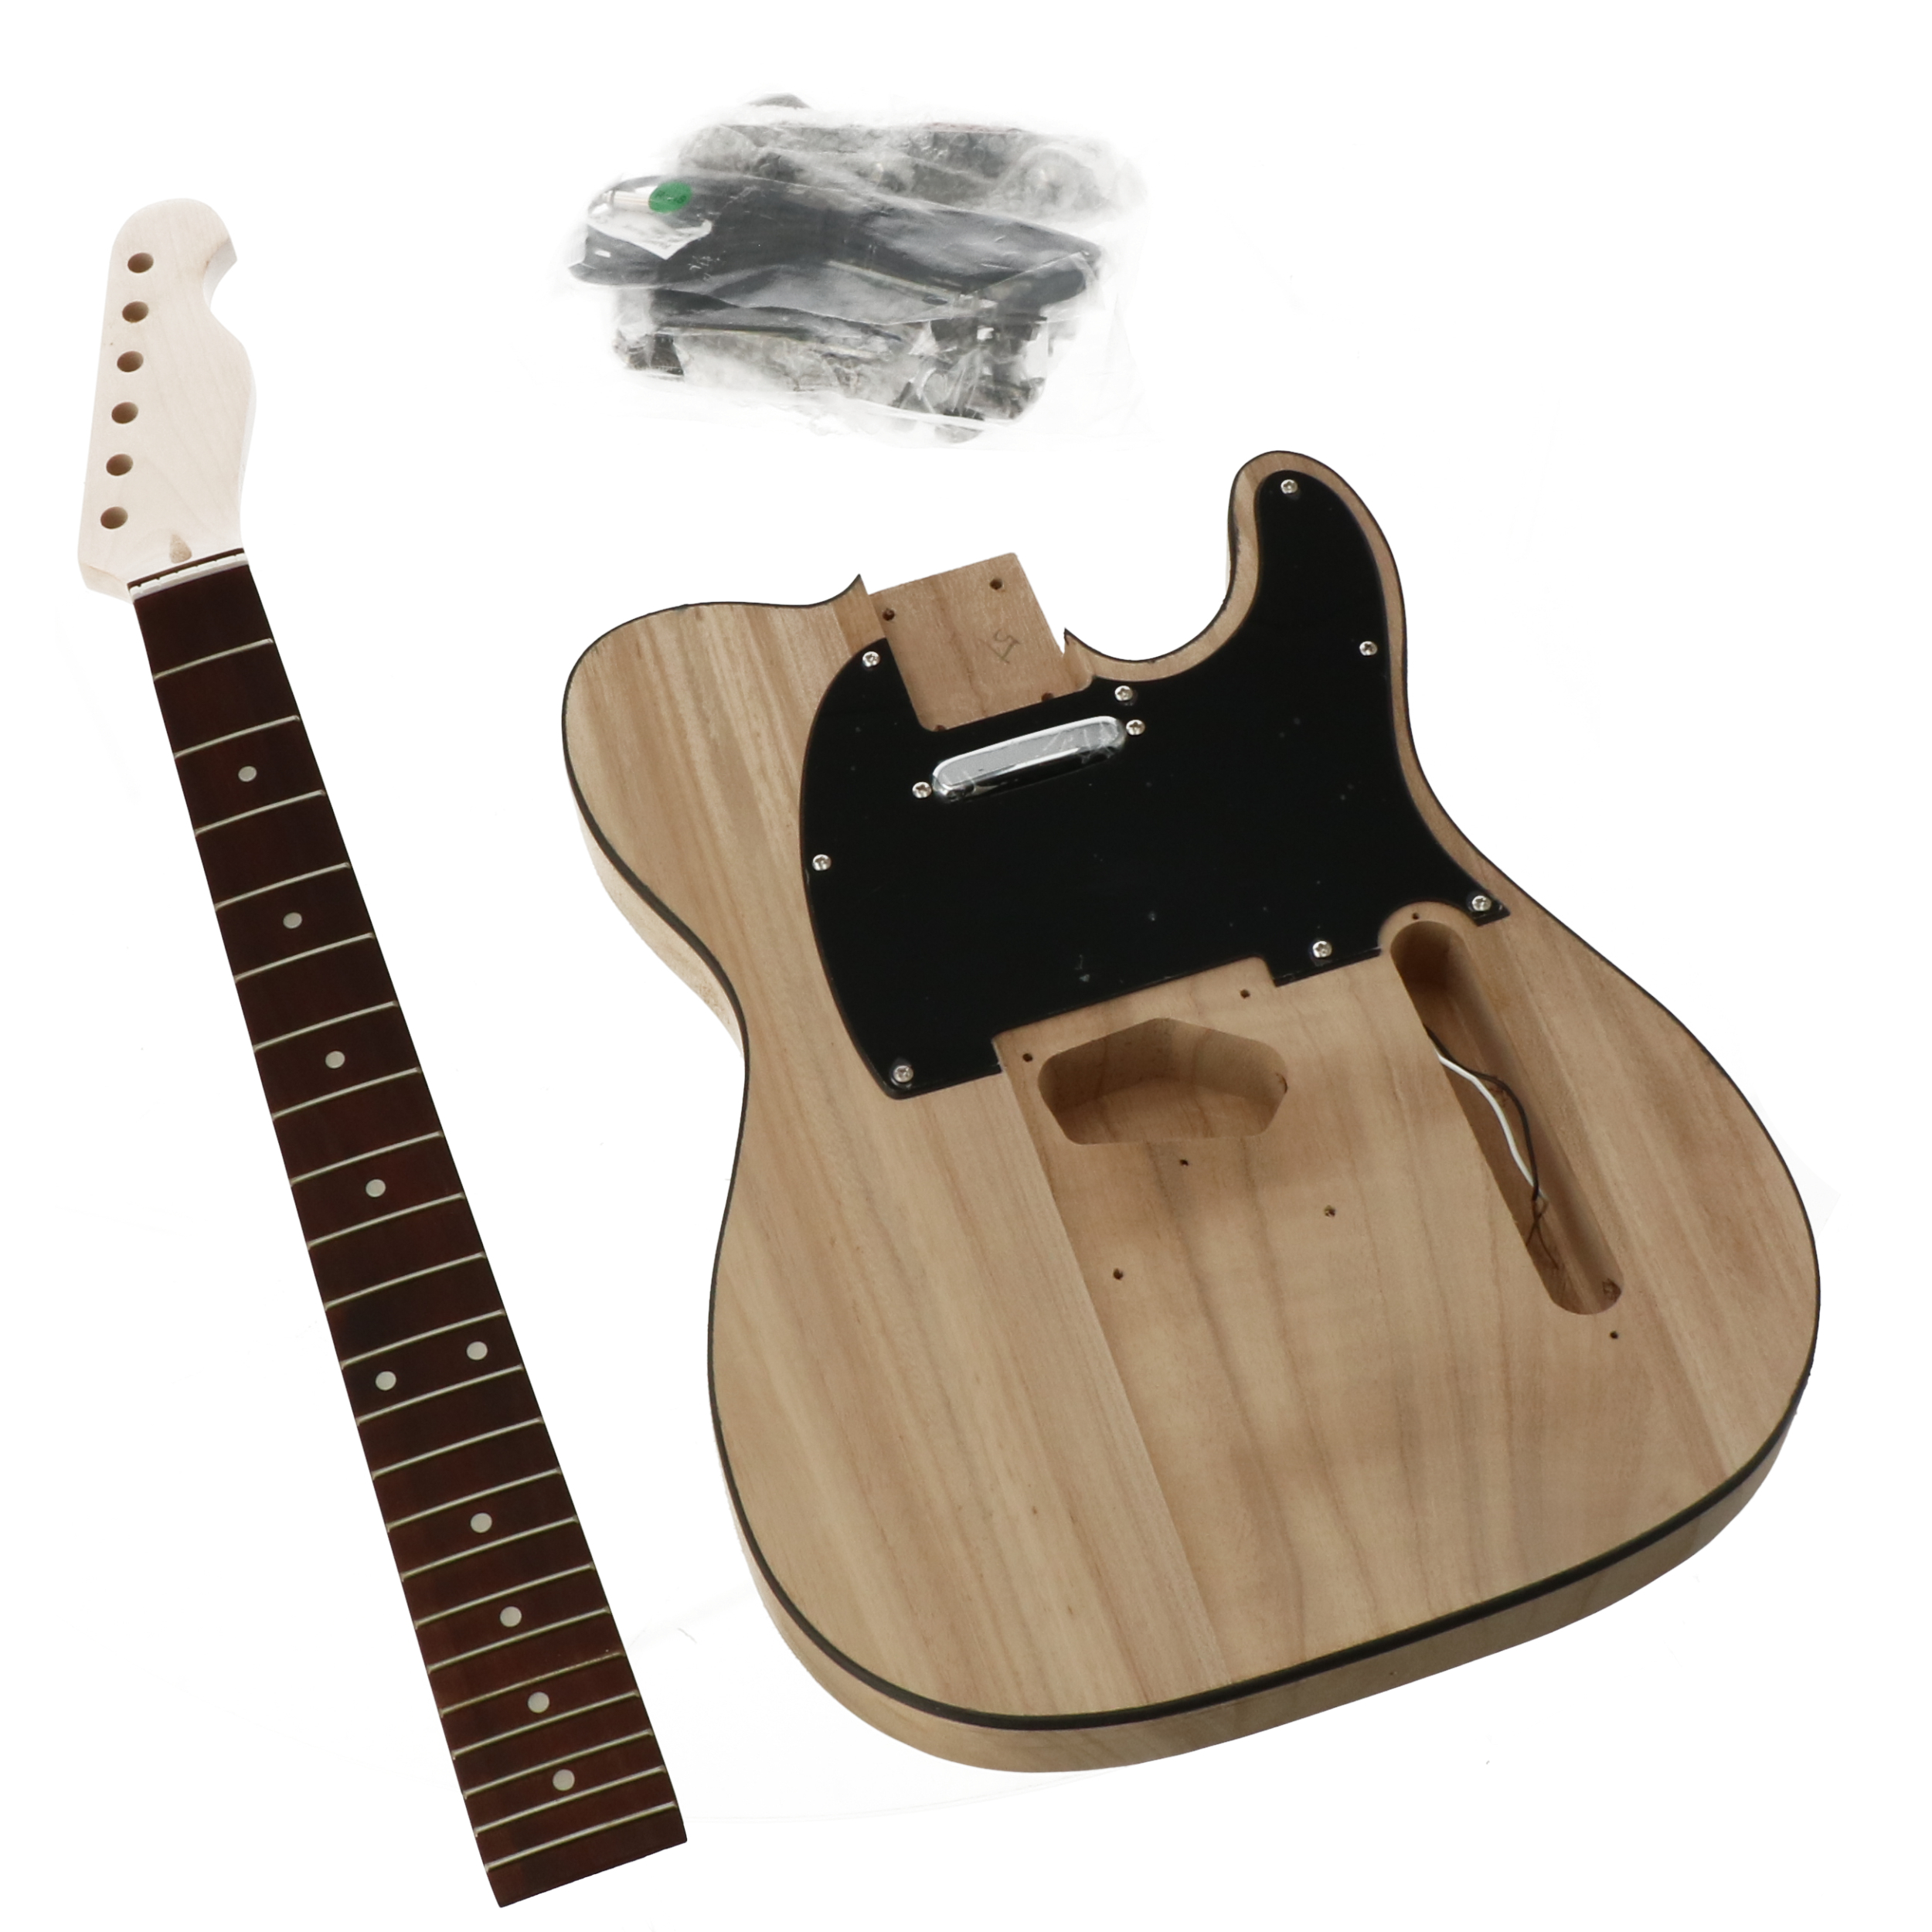 Fazley FTL-DIY Blank elektrische gitaar bouwpakket